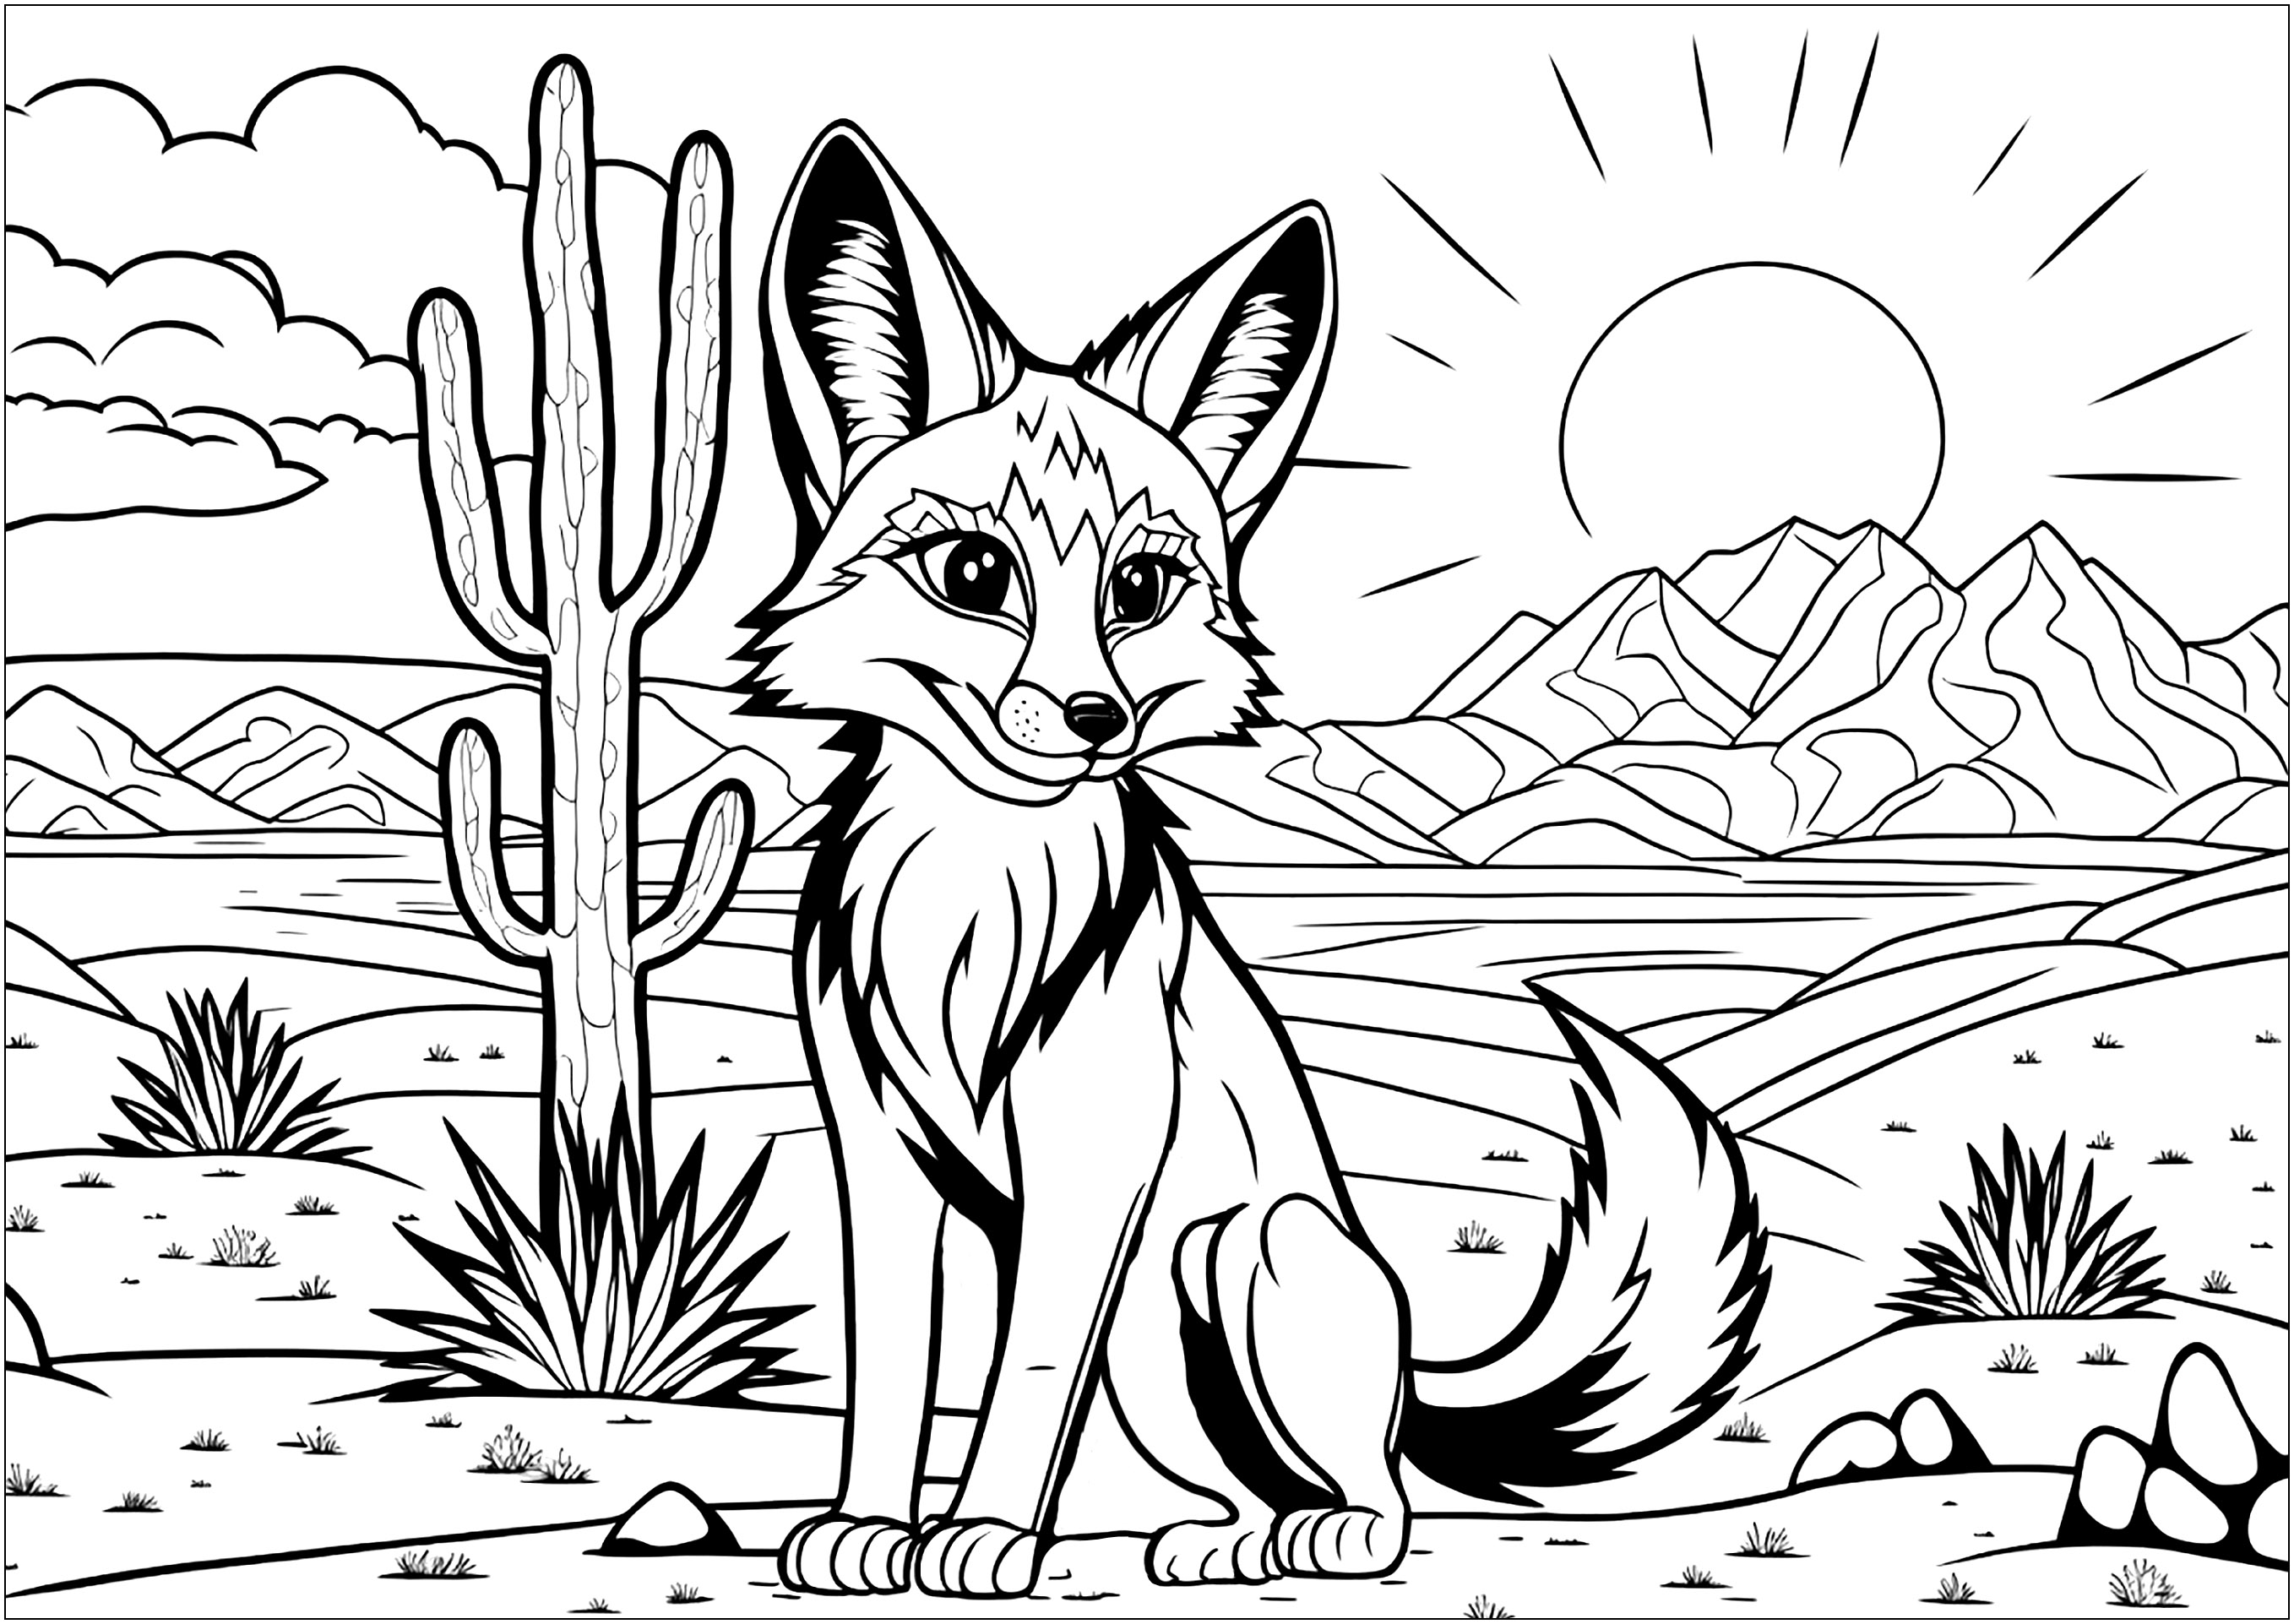 Bonito Zorro en el desierto, rodeado de cactus, con una hermosa puesta de sol detrás de las montañas. Los niños pueden elegir entre los colores cálidos y suaves del desierto y los colores vivos e intensos de la puesta de sol. Podrán crear tonos y matices únicos y creativos para colorear.